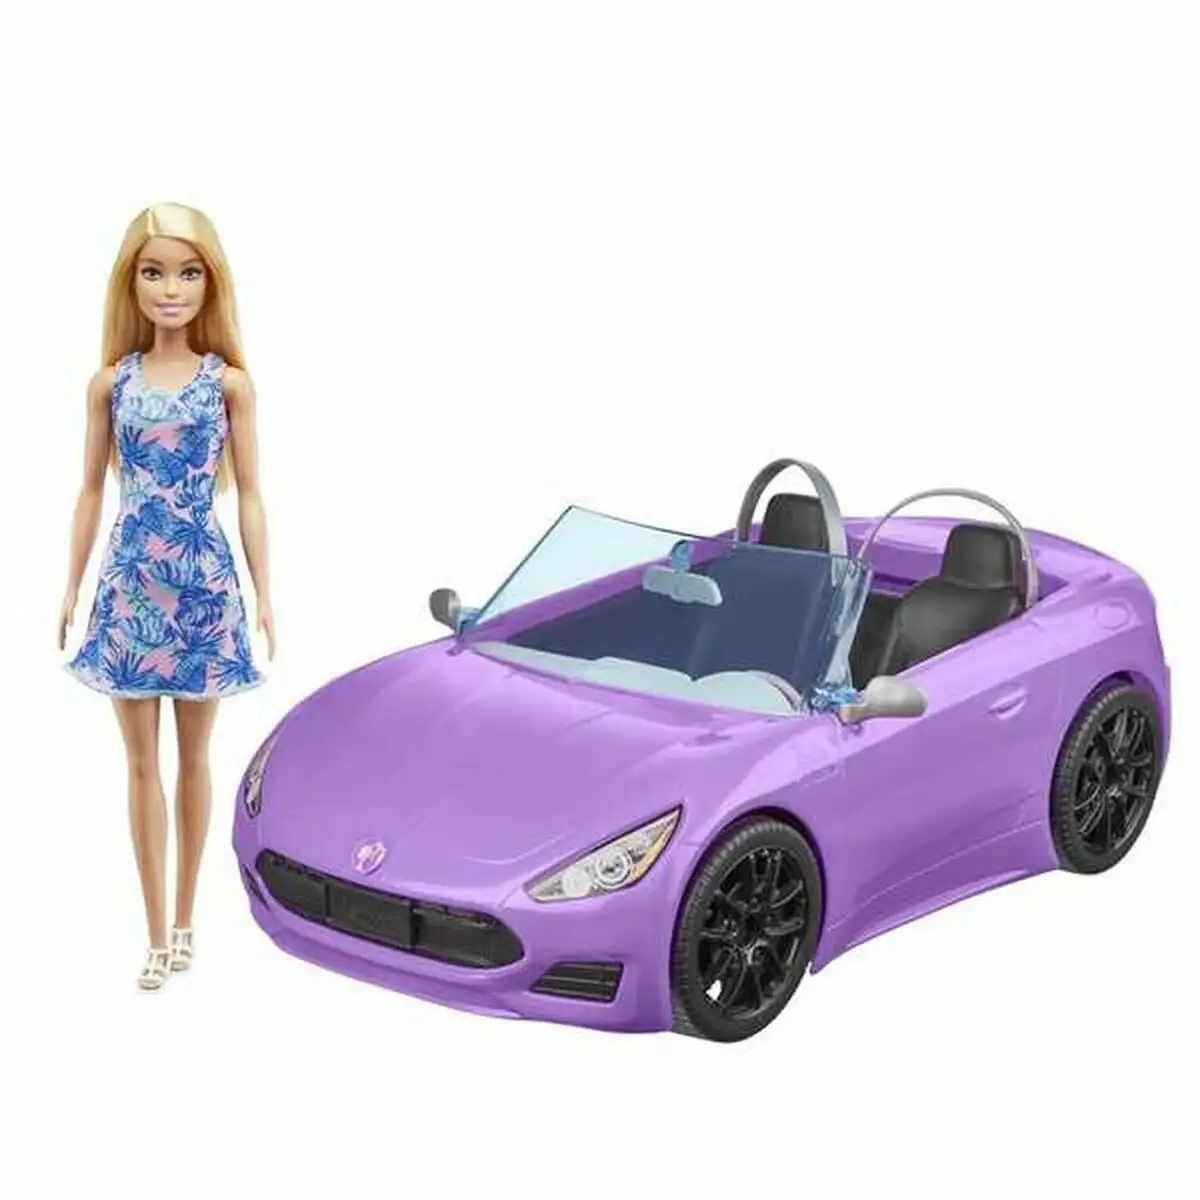 Poupee barbie and her purple convertible_4090. Bienvenue chez DIAYTAR SENEGAL - Où Chaque Produit a son Âme. Découvrez notre gamme et choisissez des articles qui résonnent avec votre personnalité et vos valeurs.